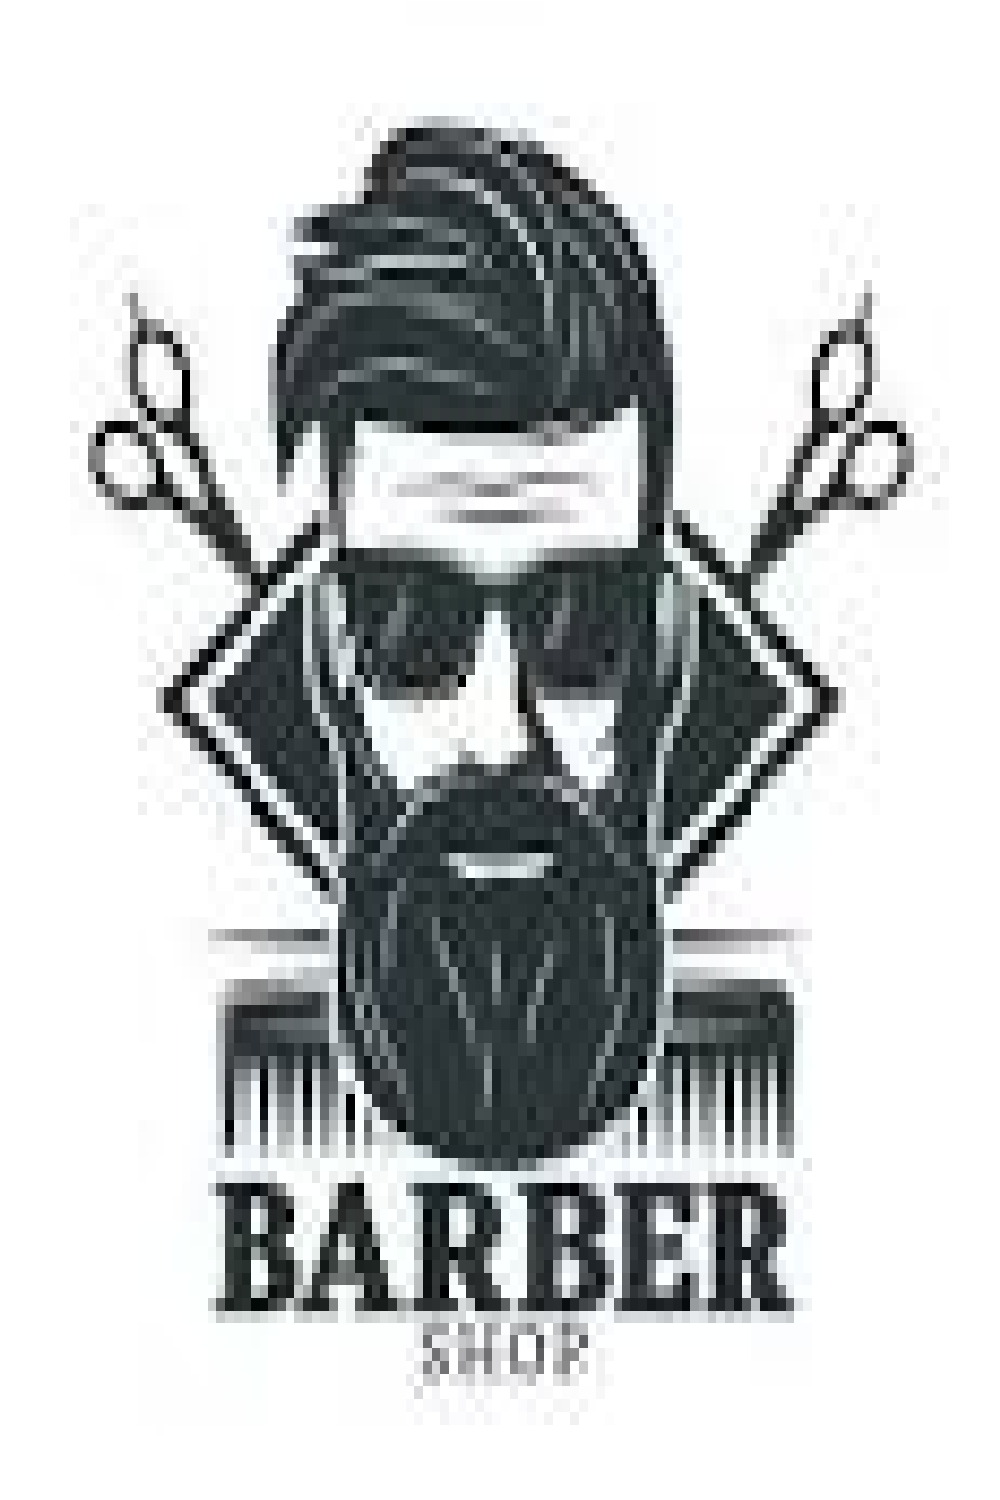 barber shop logo pinterest preview image.